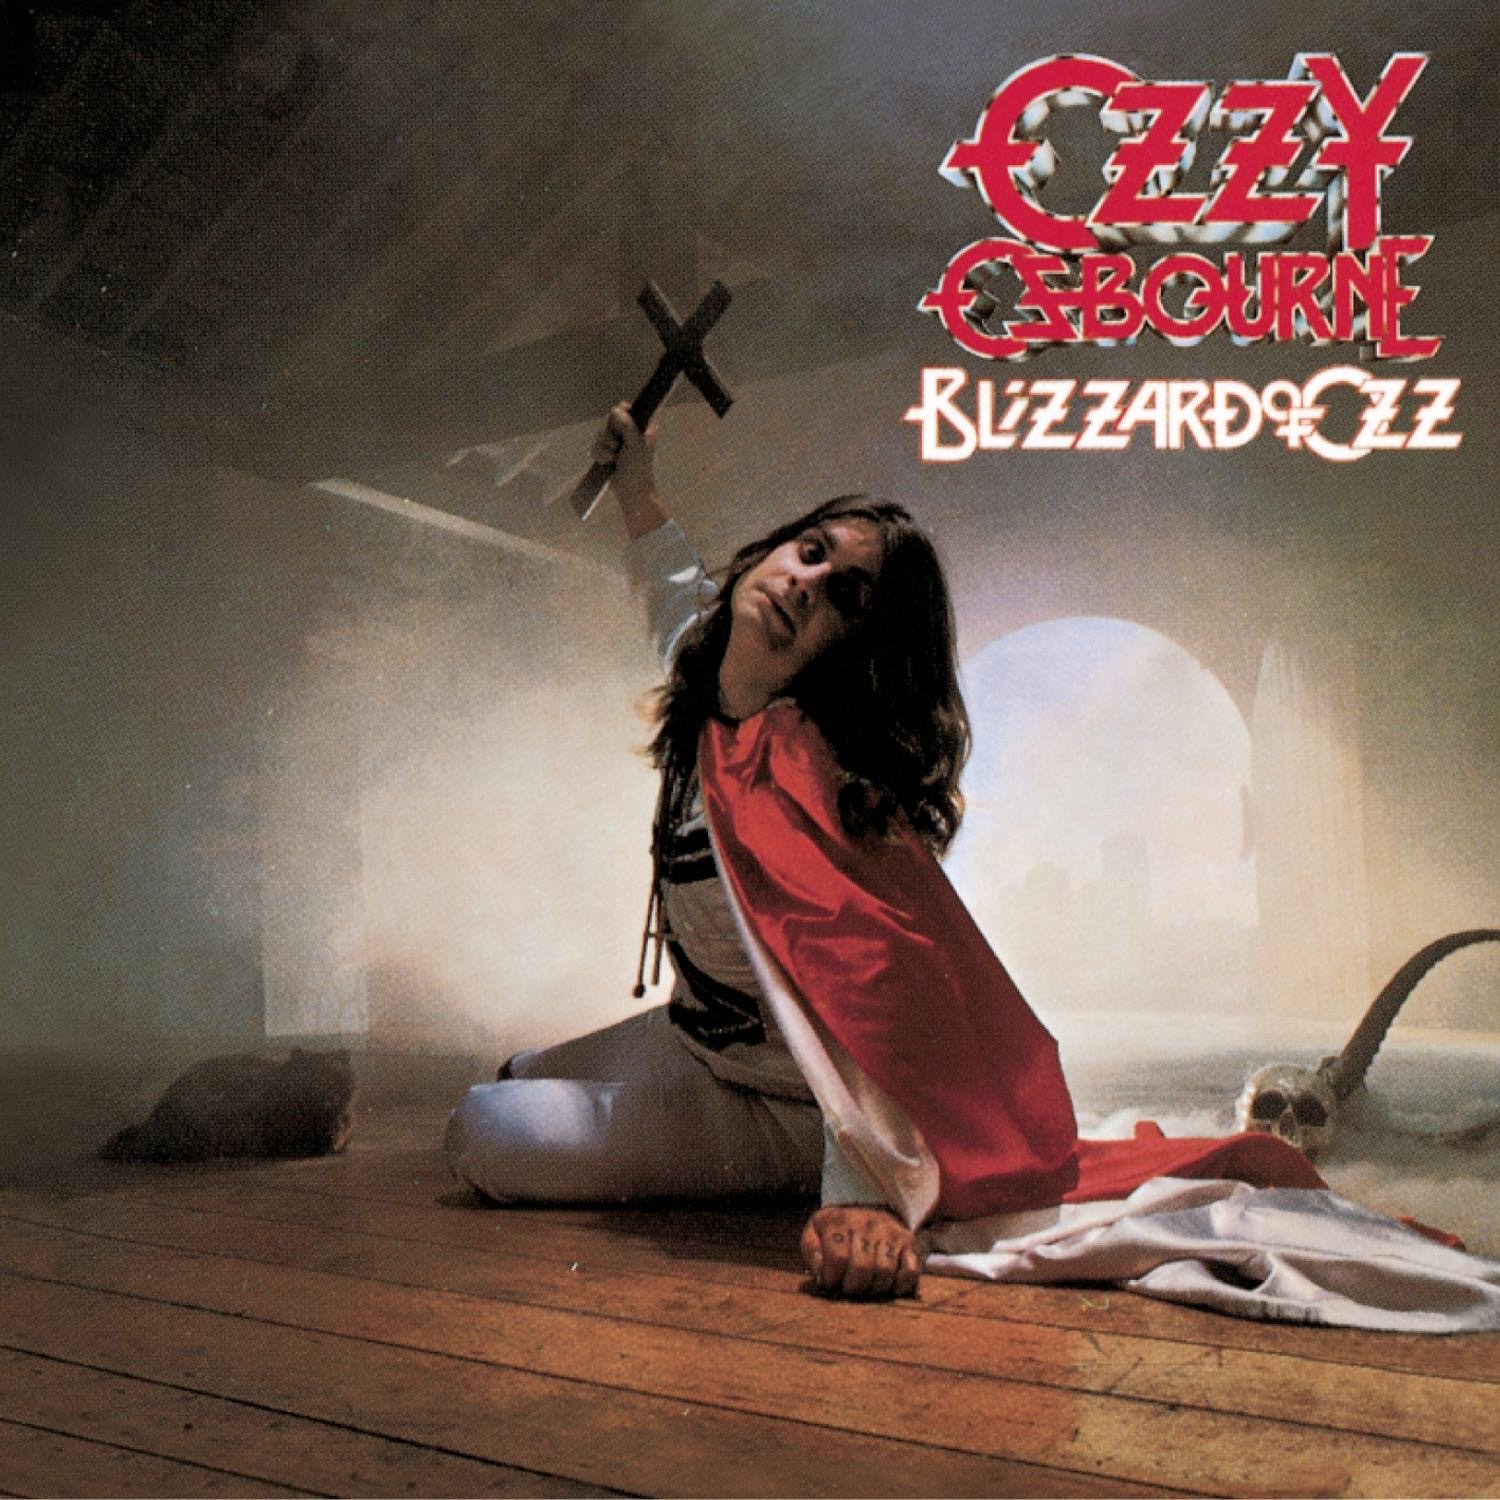 Ozzy's Ozzy Osbourne Blizzard